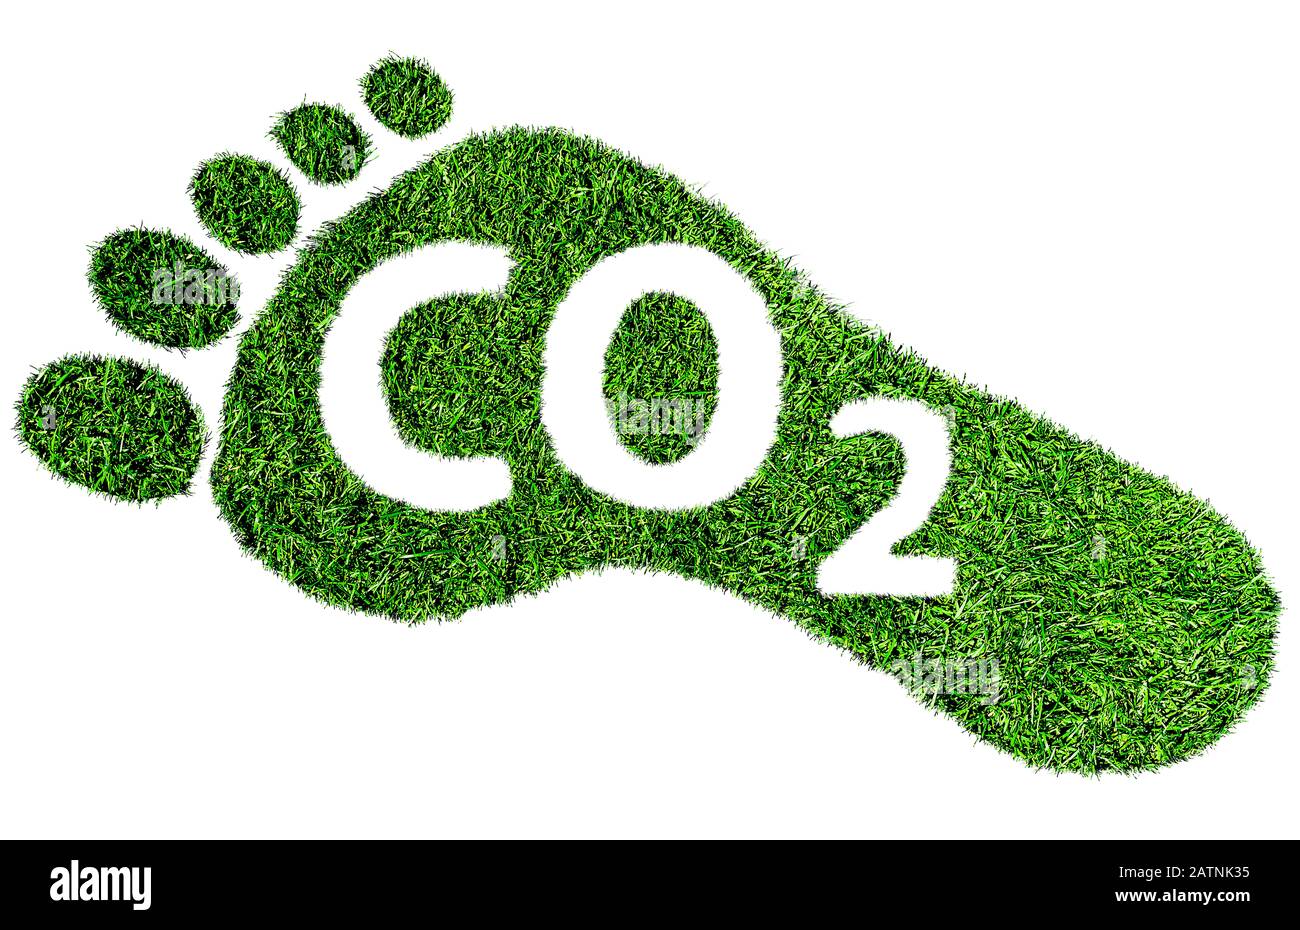 Symbole ou concept d'empreinte carbone, empreinte pieds nus en herbe verte luxuriante avec texte CO 2 Banque D'Images